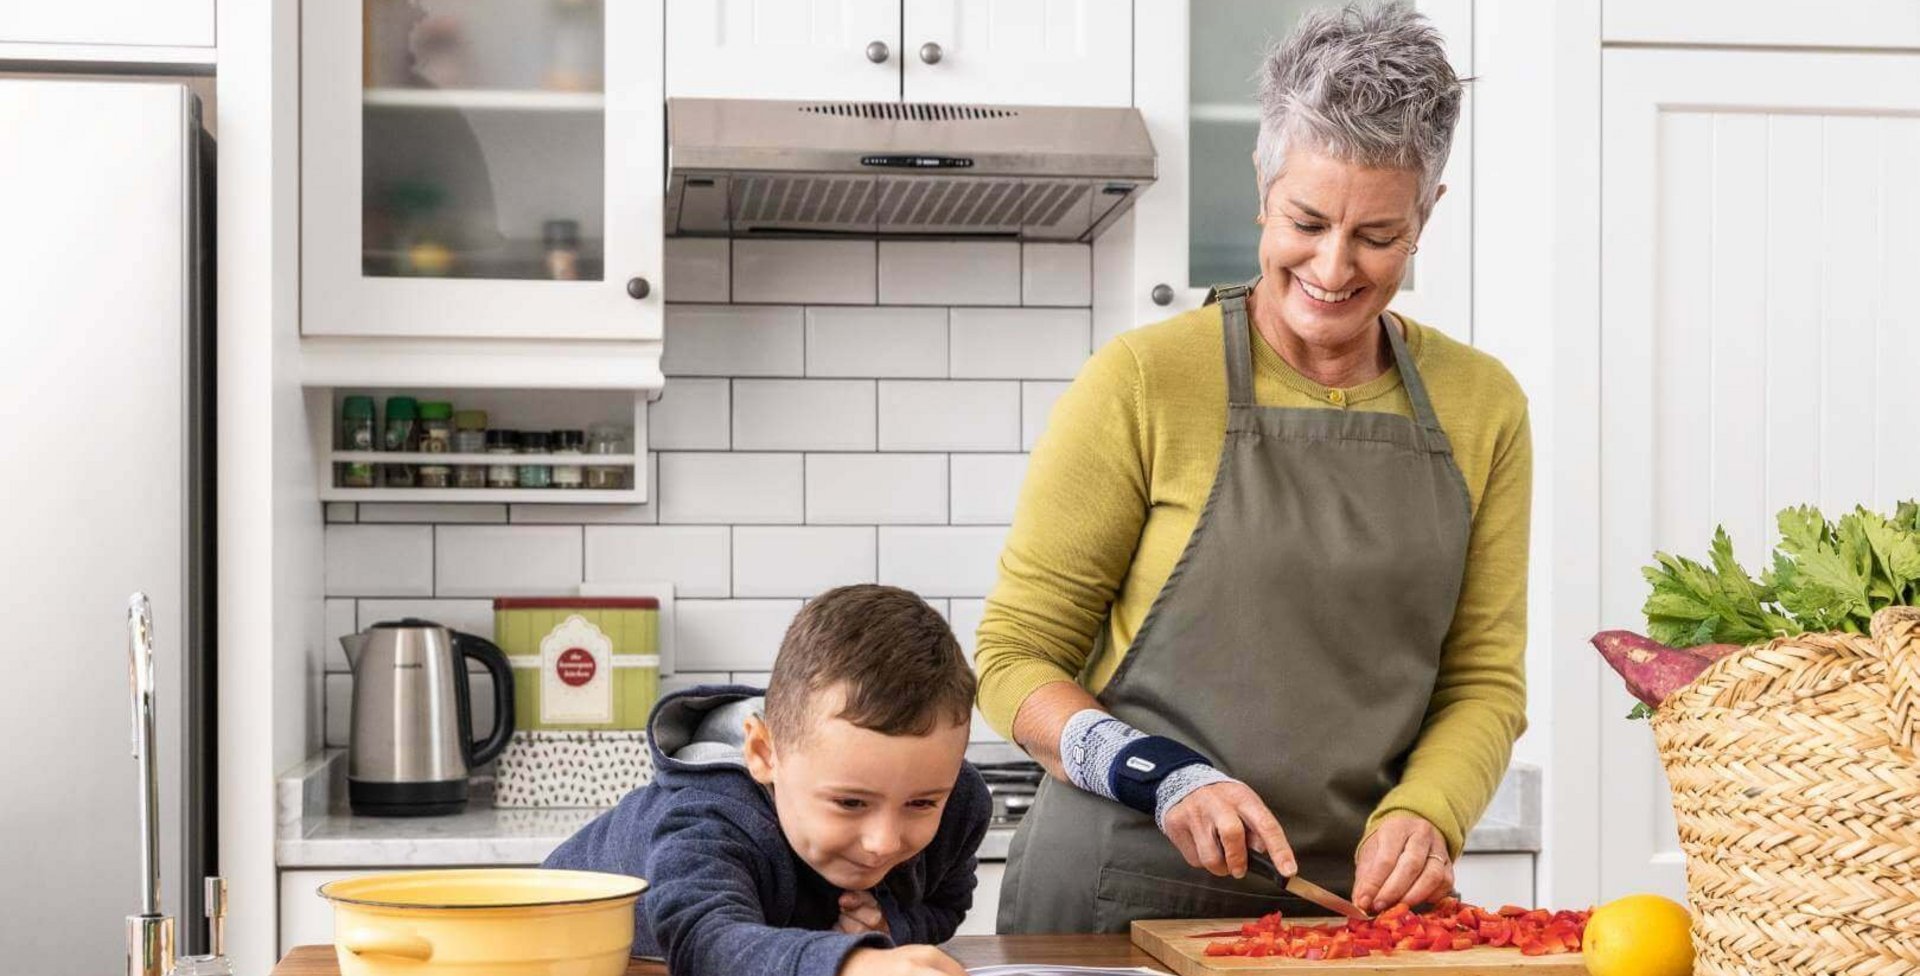 Das Bild zeigt eine ältere Frau in einer Küche, die gemeinsam mit ihrem Enkel kocht. Die Dame trägt eine ManuTrain Bandage zur konservativen Therapie ihrer Handgelenksarthrose.